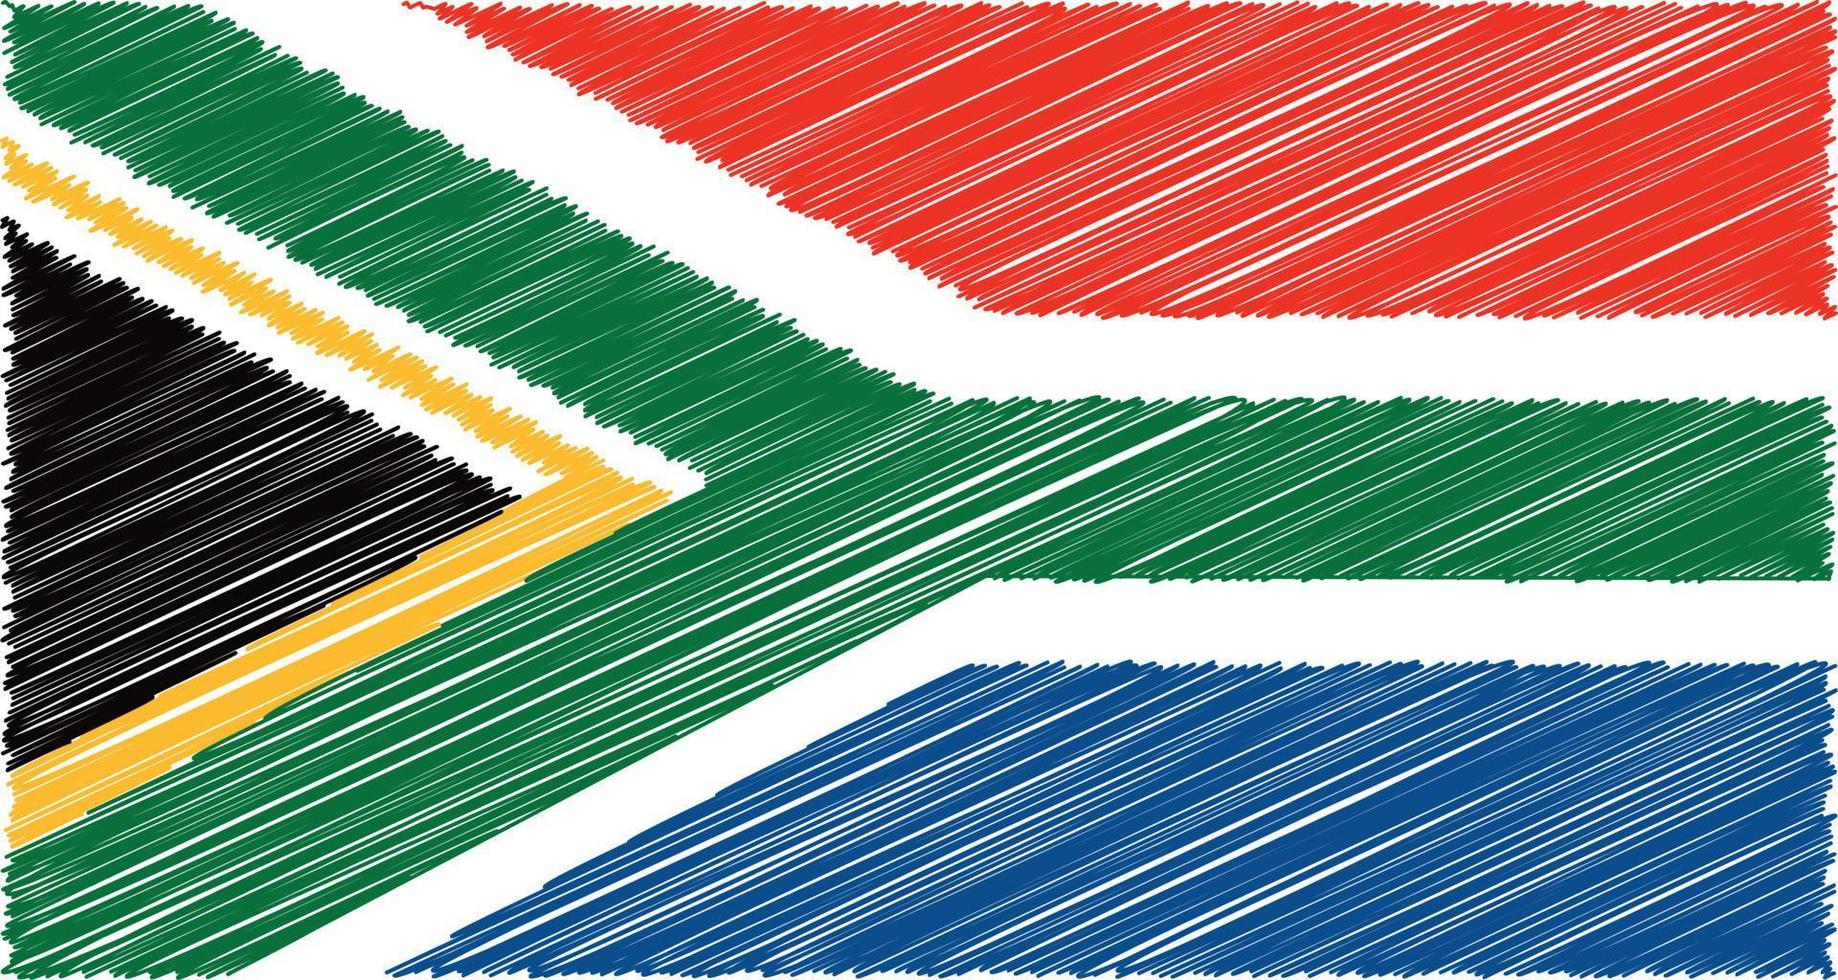 zuiden Afrika vlag transparant met waterverf verf borstel stijl vrij PNG vrij vector en PNG